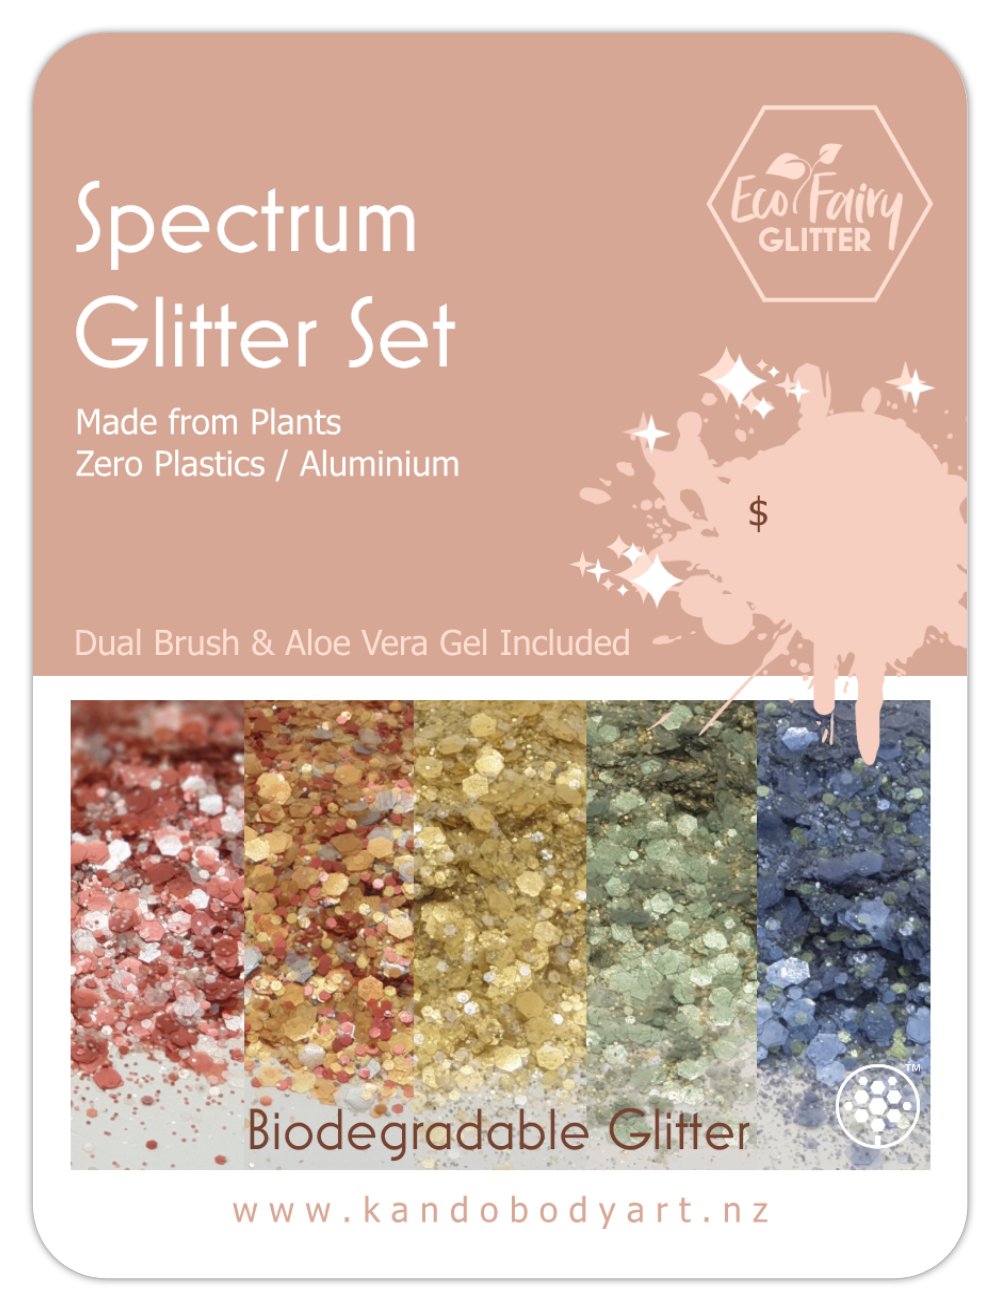 Spectrum Glitter Kit